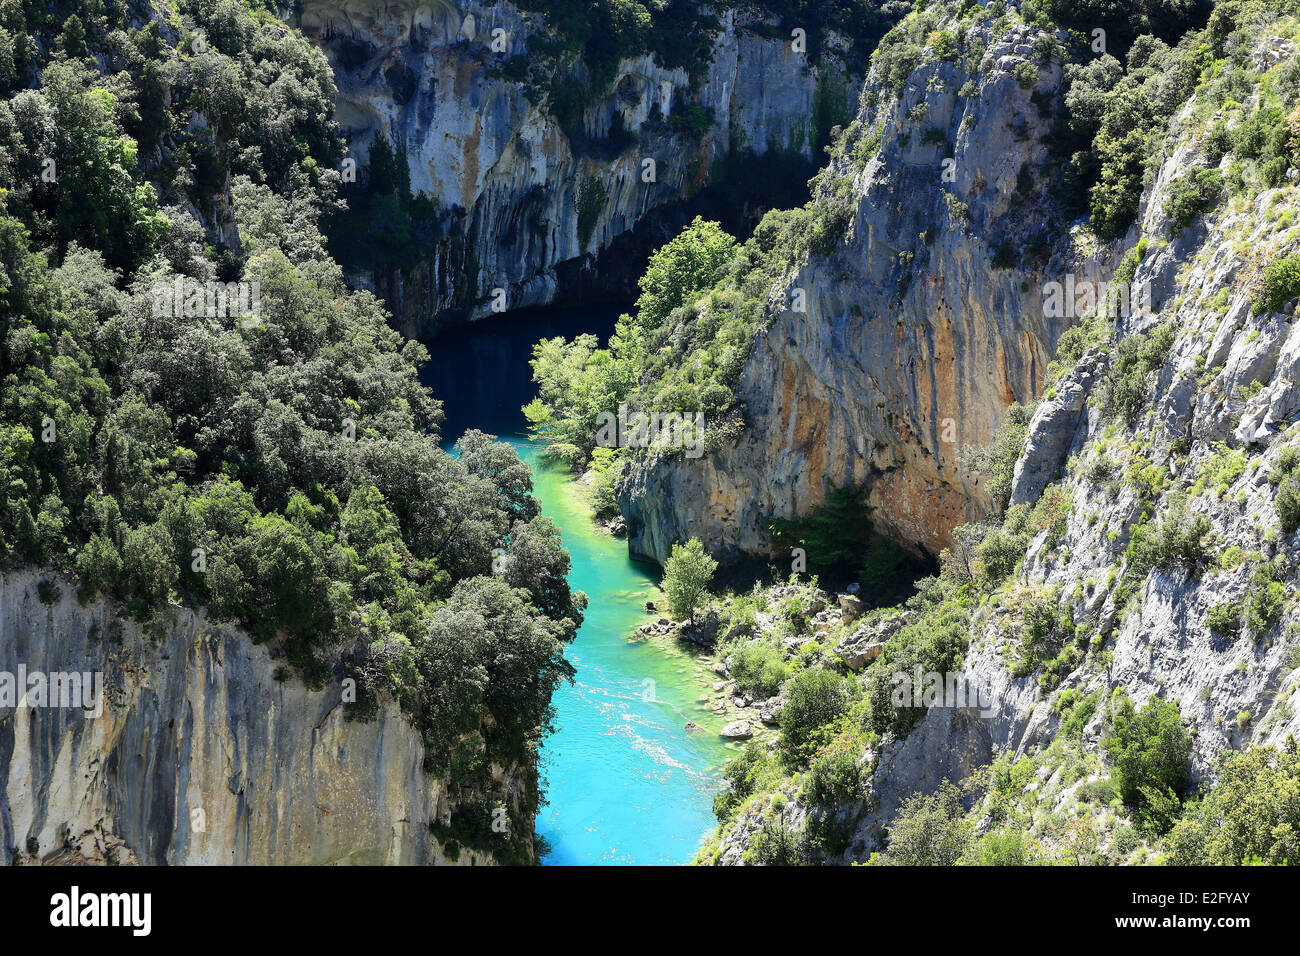 France Alpes de Haute Provence Verdon Regional Park Gorges Monpezat the Verdon river Stock Photo